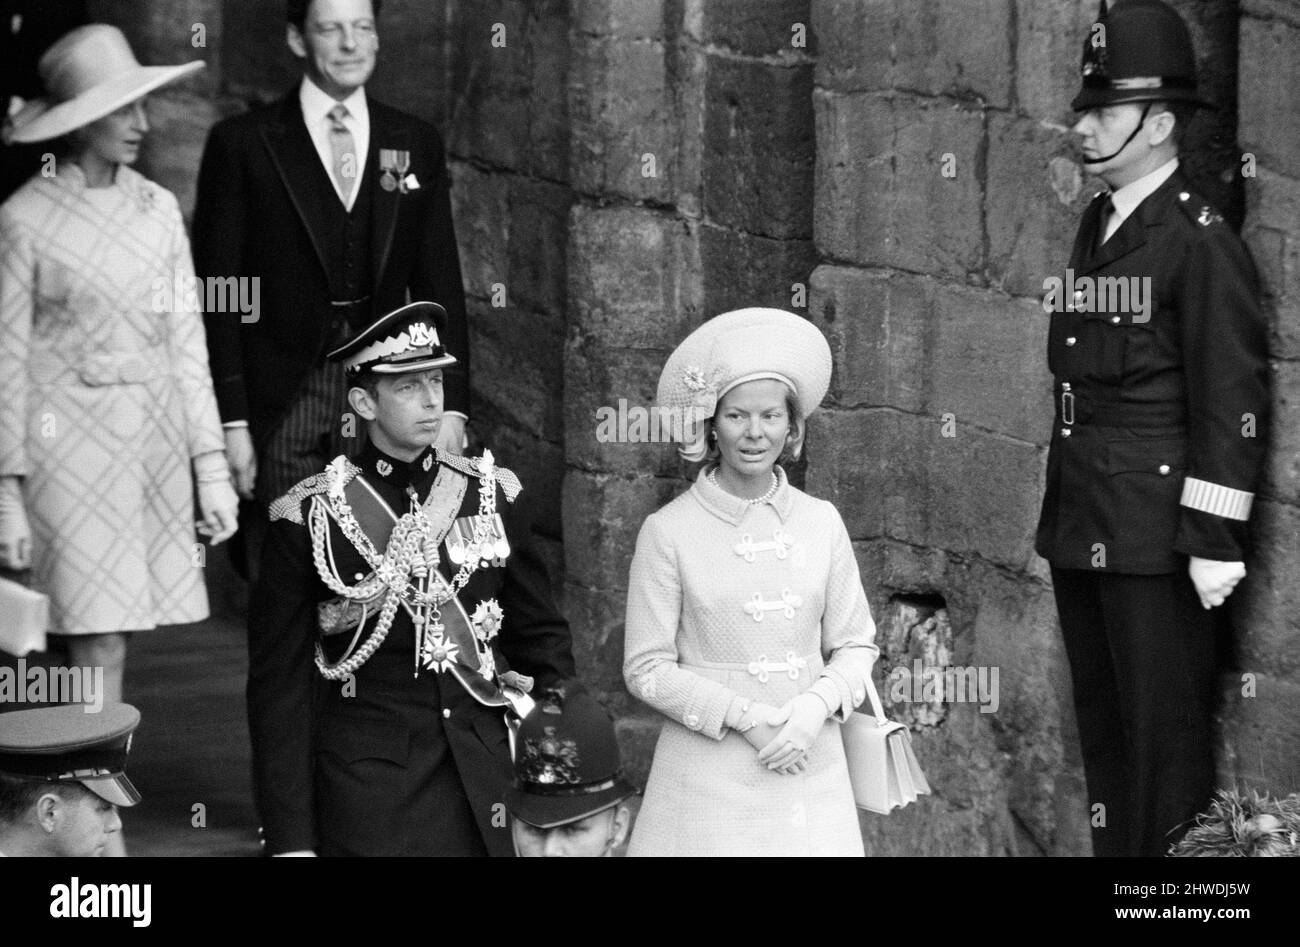 Die Investitur von Prinz Charles auf Caernarfon Castle. Caernarfon, Wales. Abgebildet der Herzog und die Herzogin von Kent. 1.. Juli 1969. Stockfoto